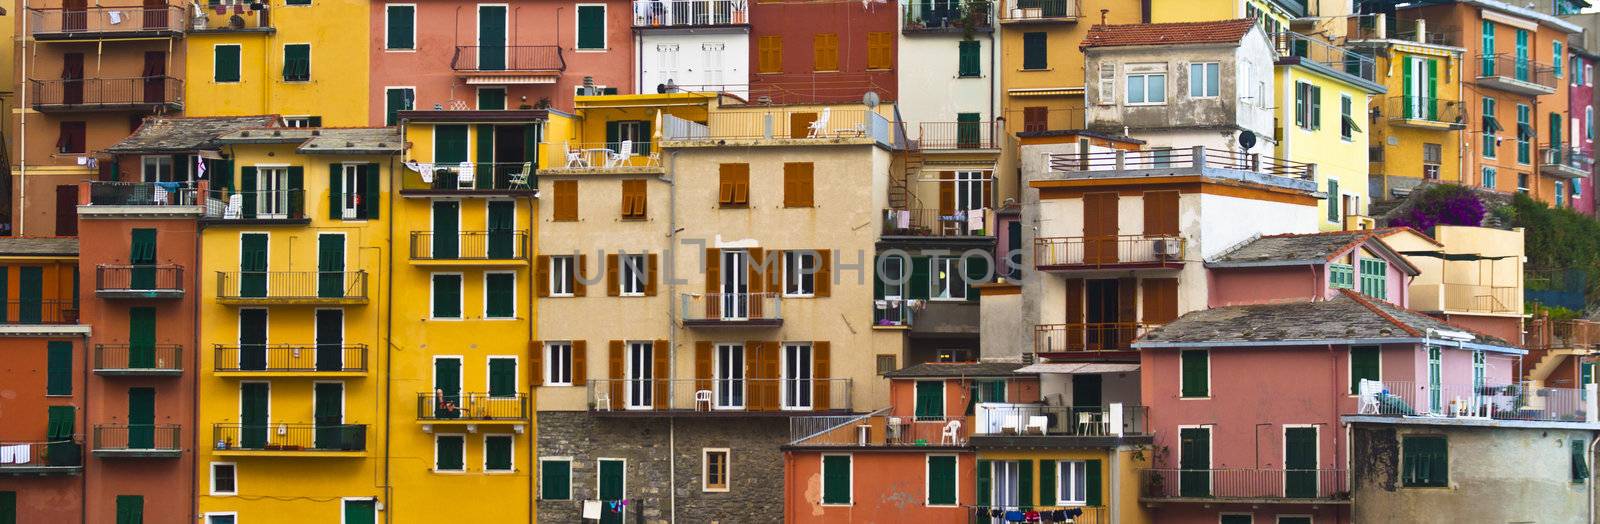 Colourful texture of  Manarola village of Cinque Terre - Italy.  by kasto